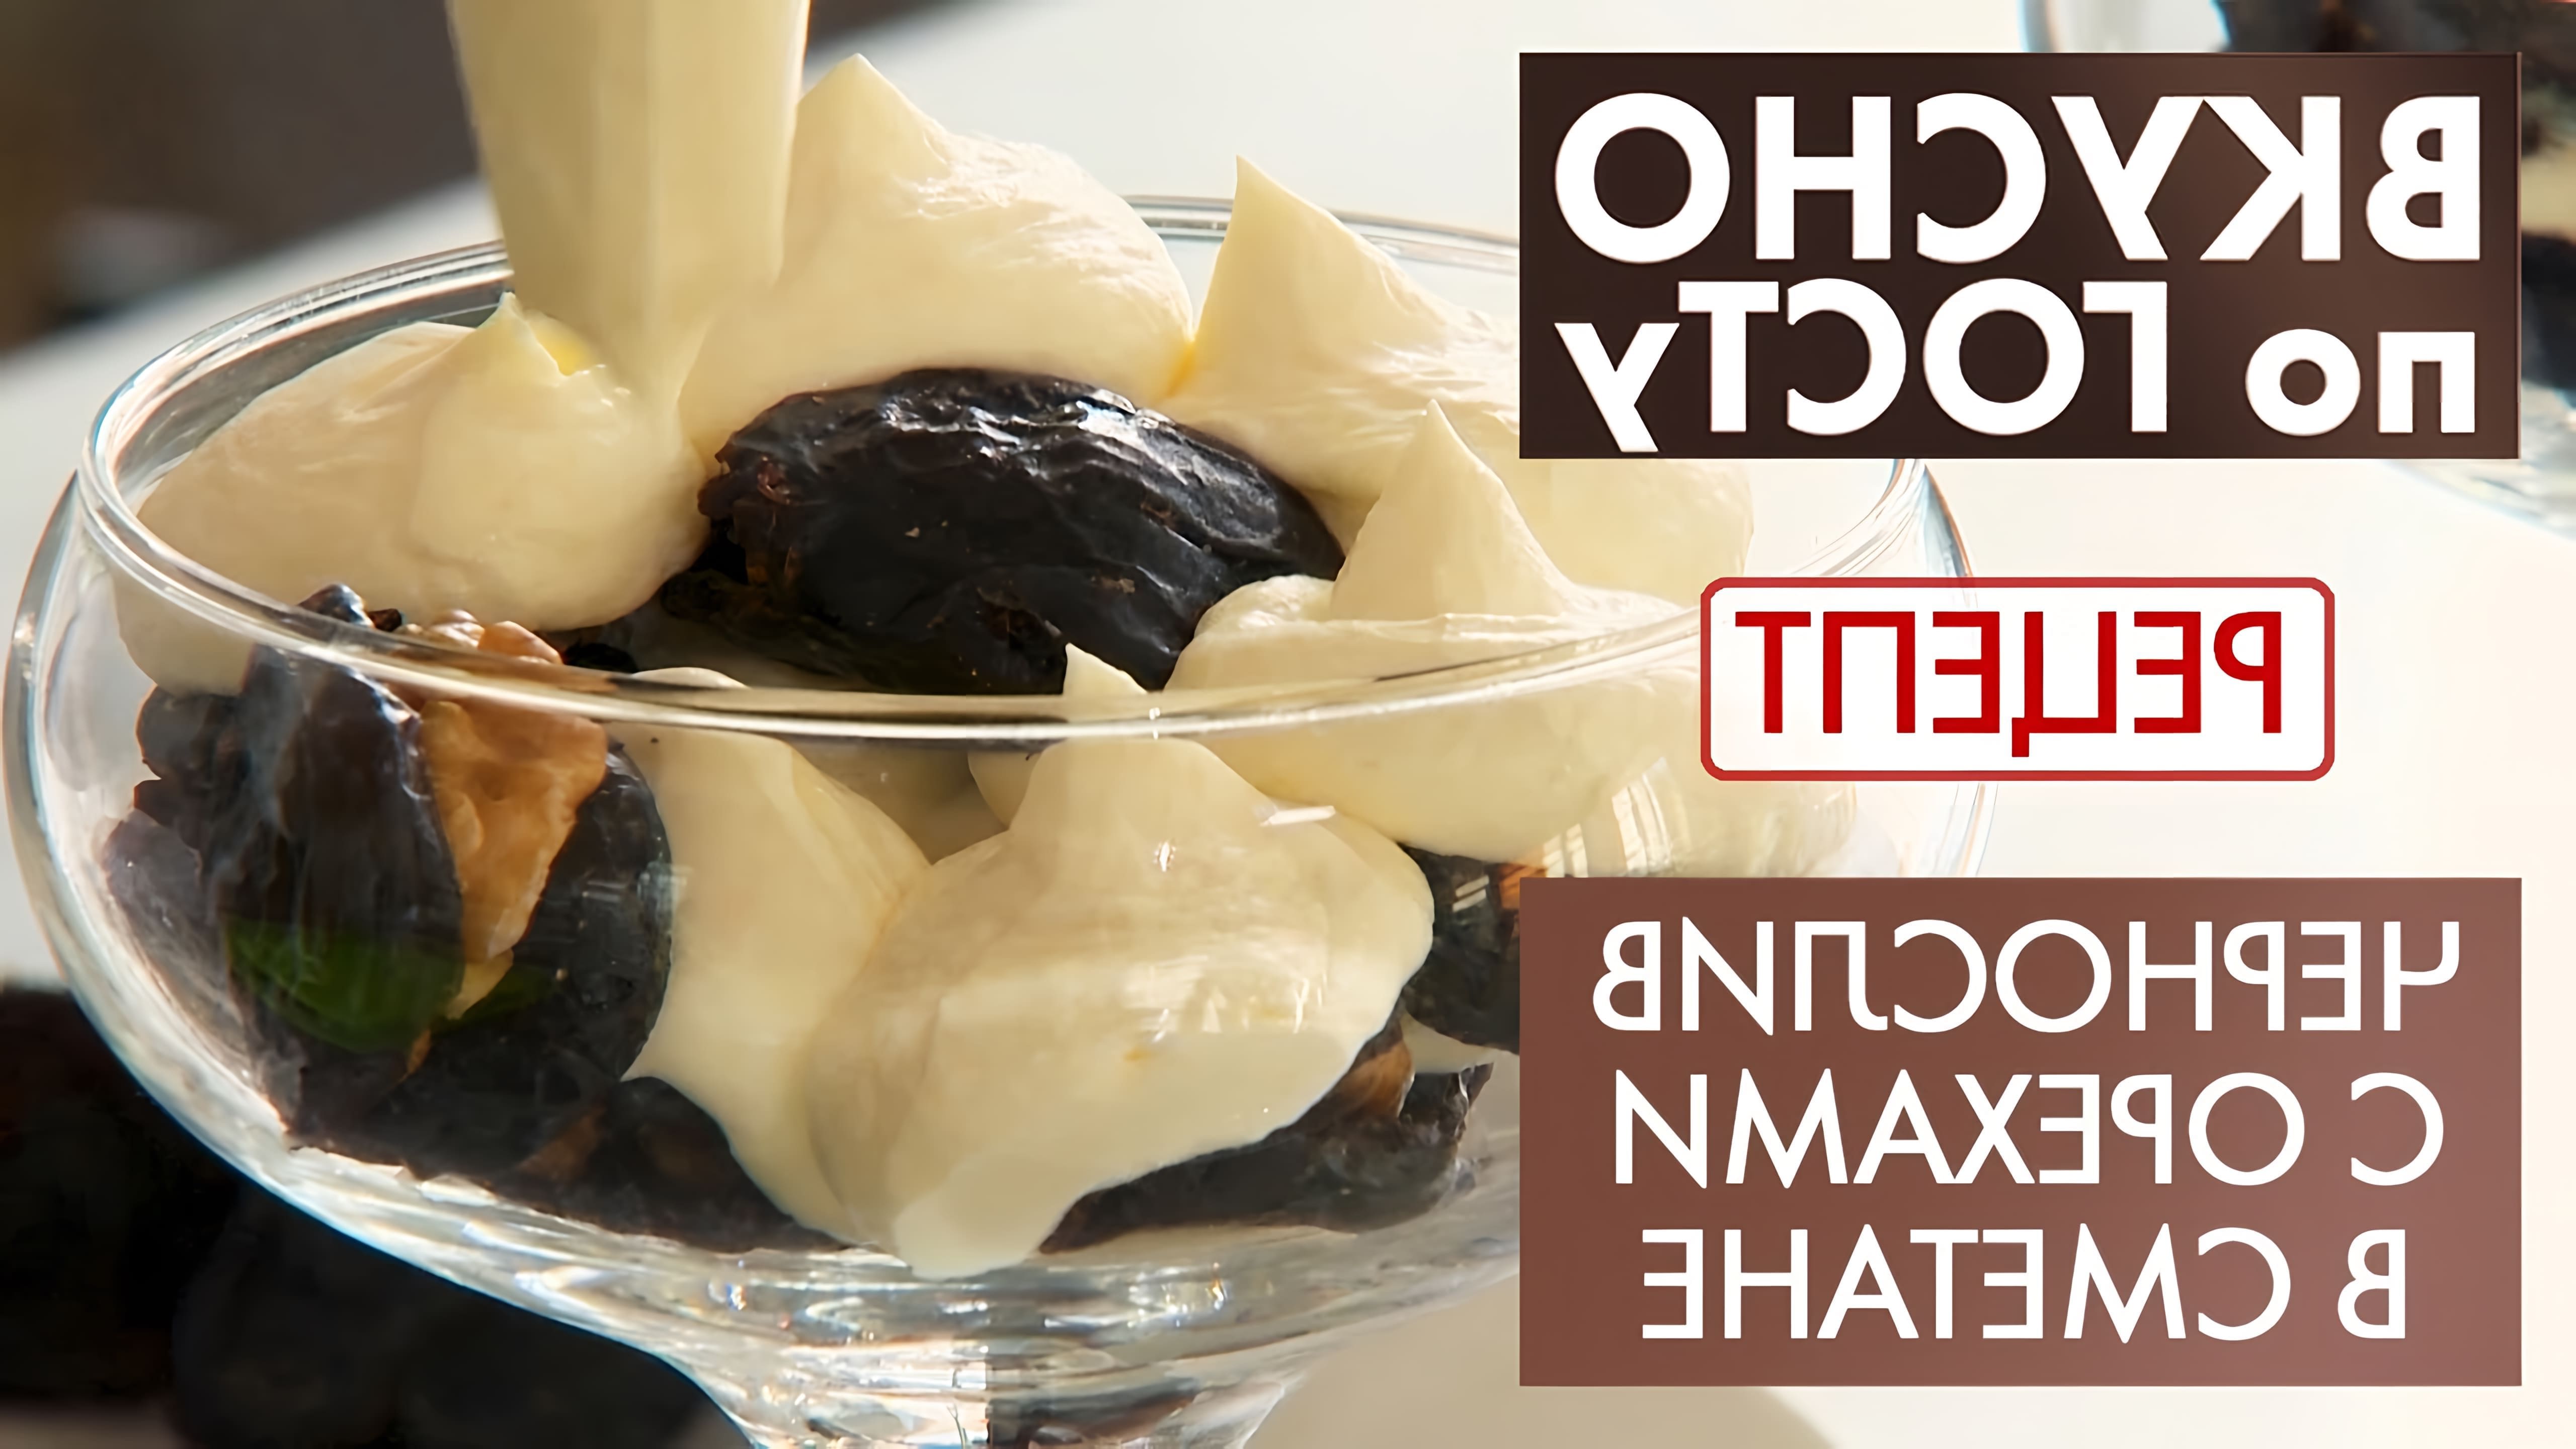 В этом видео демонстрируется рецепт десерта с черносливом и грецкими орехами